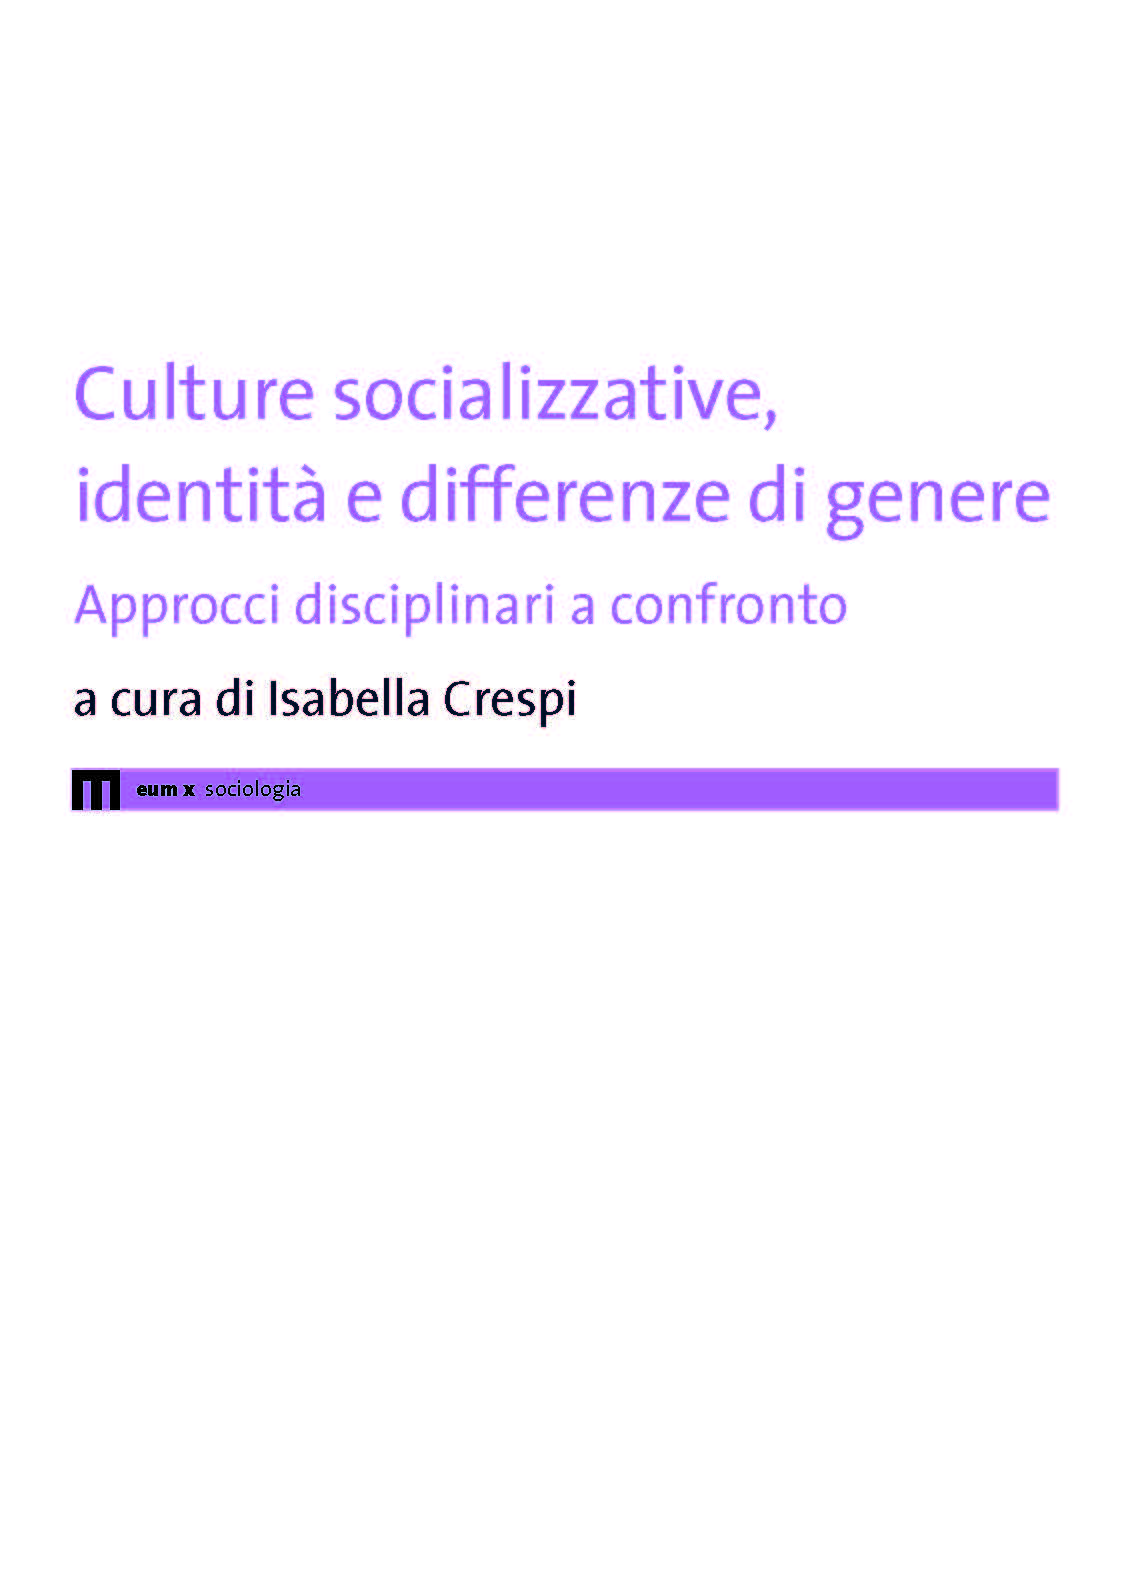 Culture socializzative, identità e differenze di genere